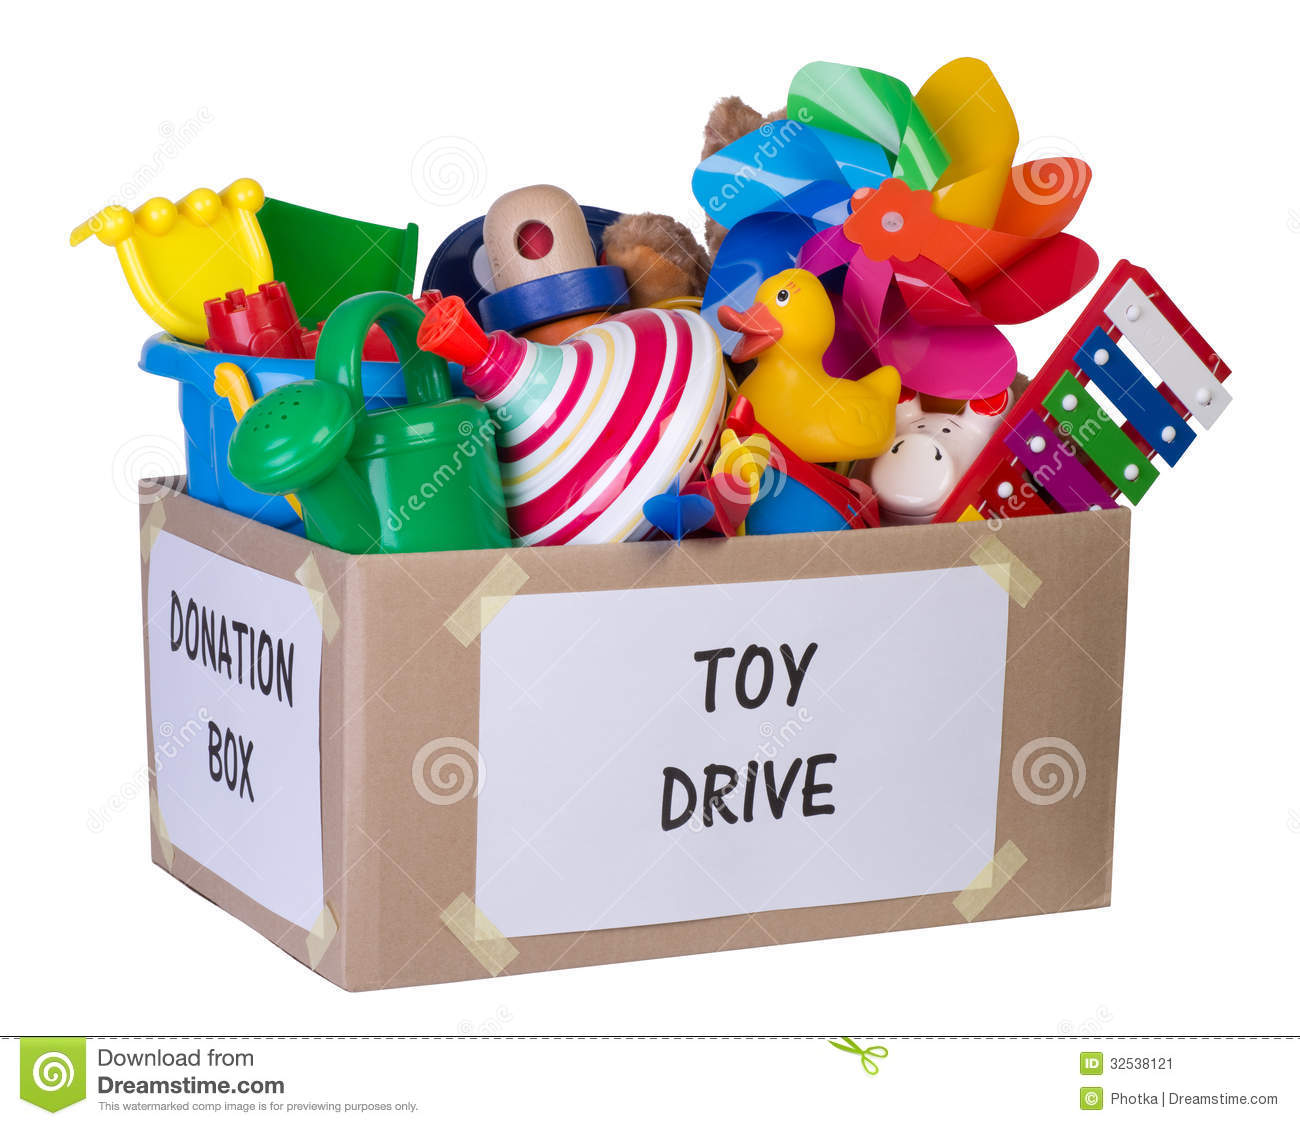 Toy Donation Box Stock Image   Image  32538121